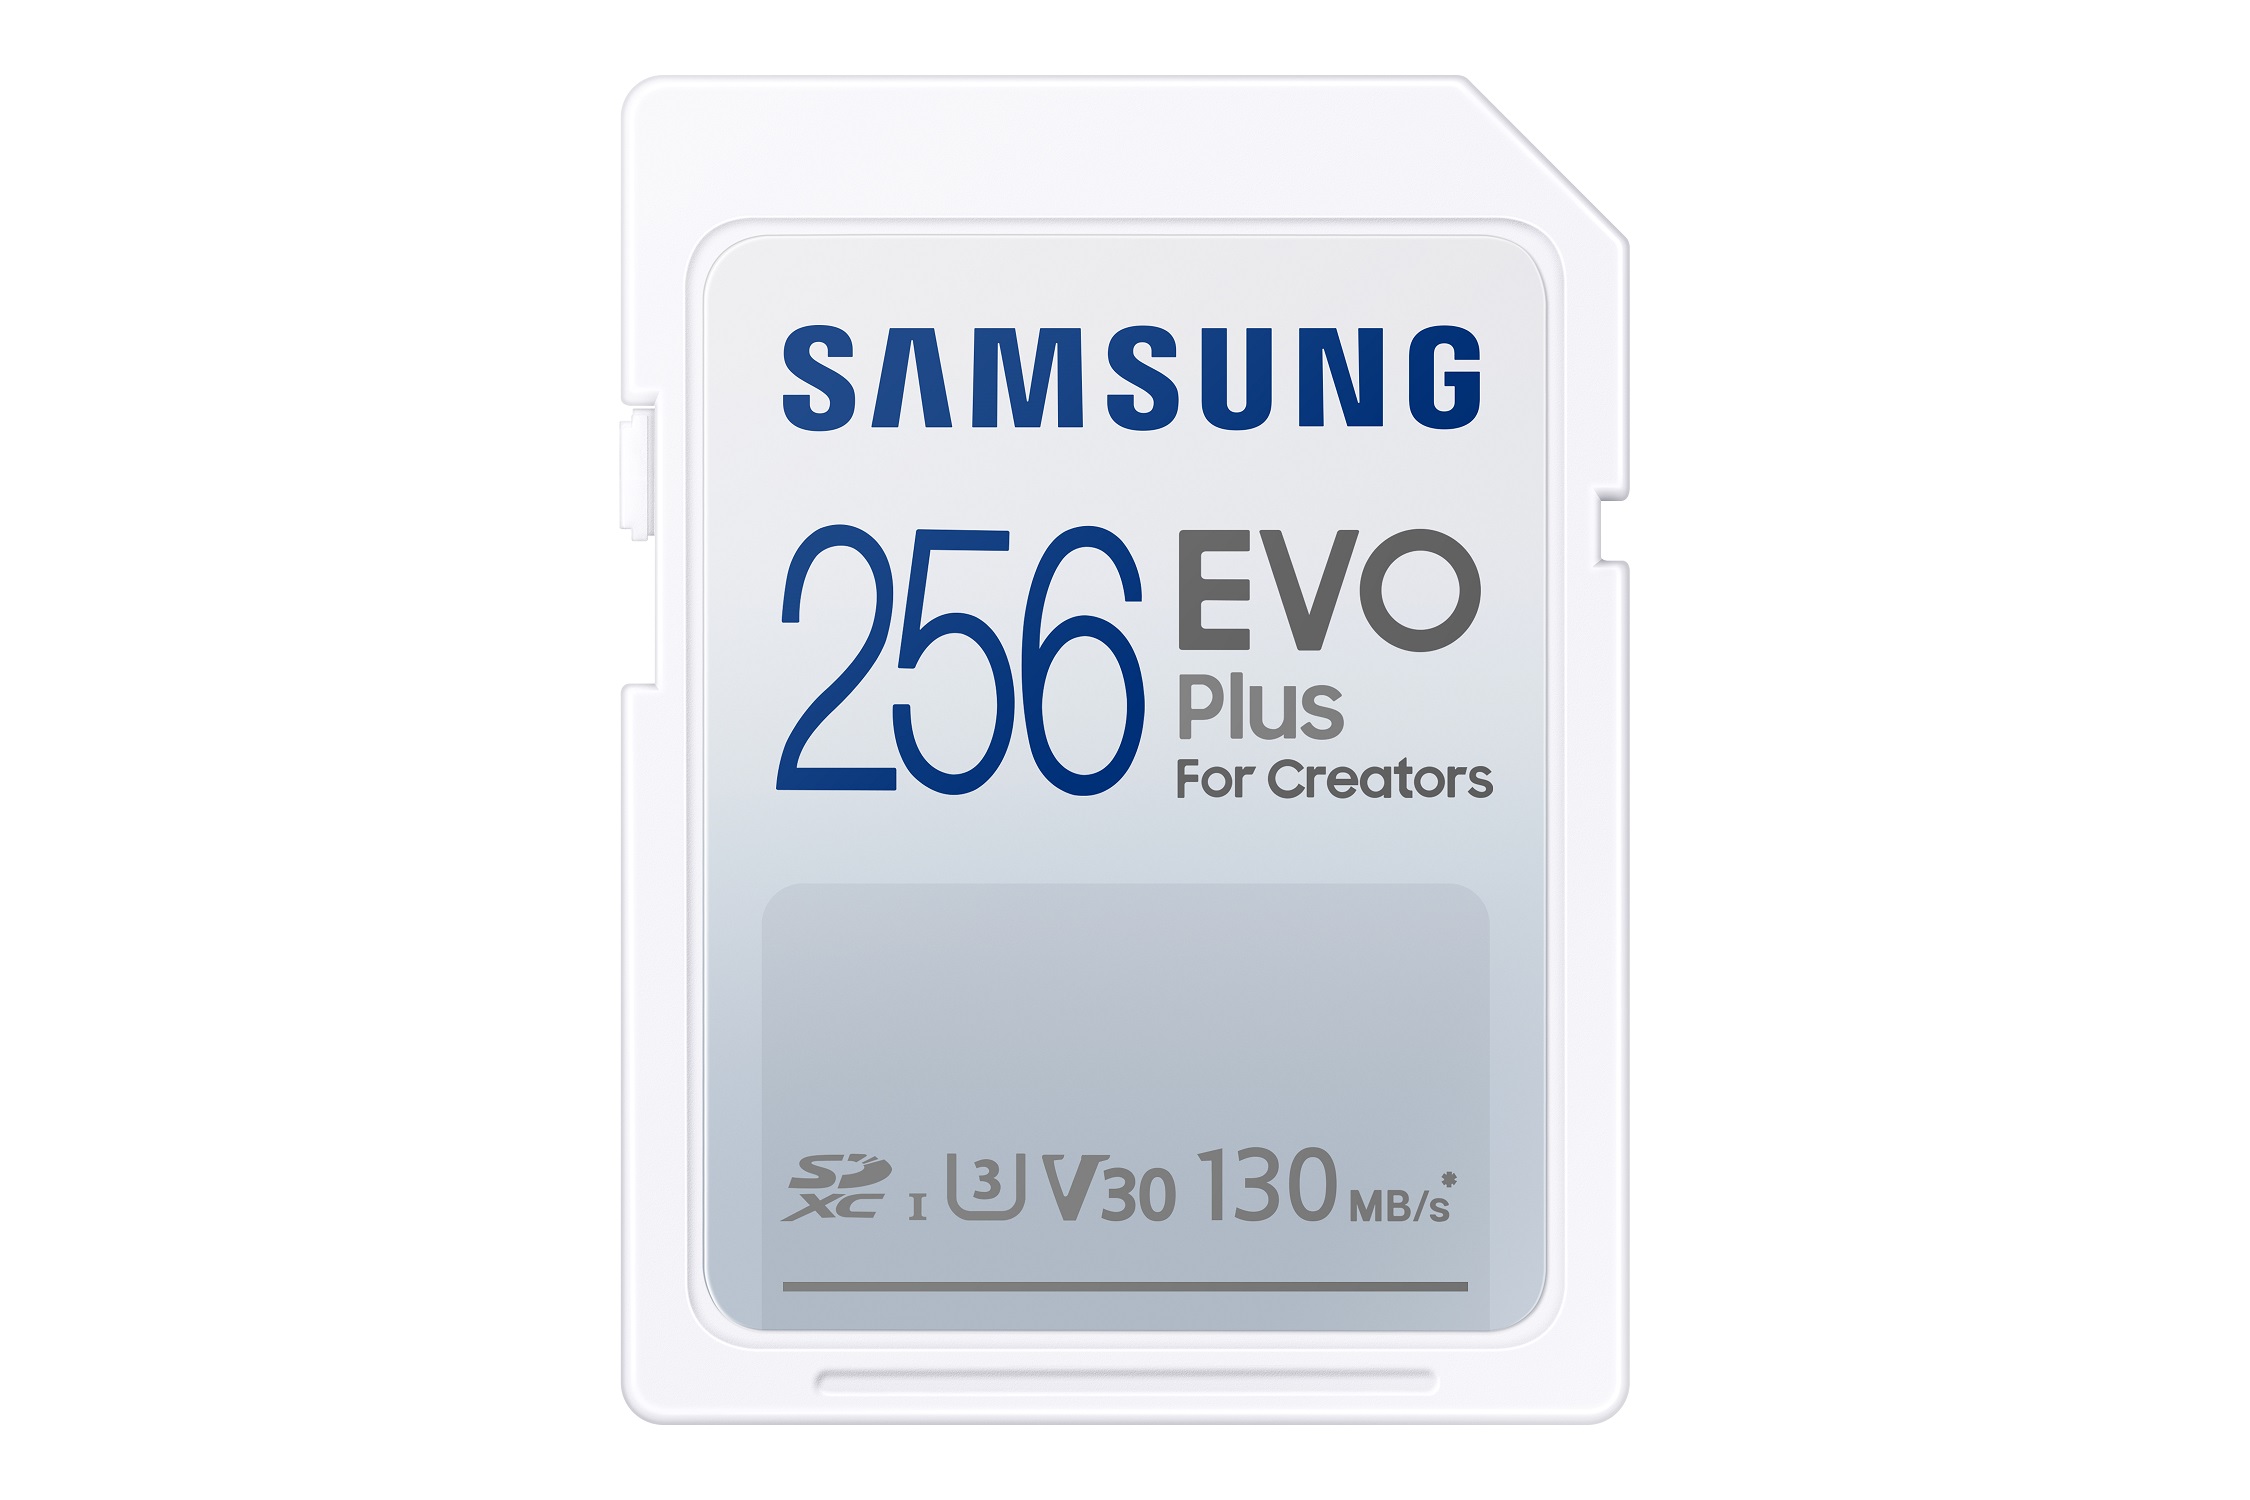 Samsung EVO Plus/SDXC/256GB/130MBps/UHS-I U3 / Class 10